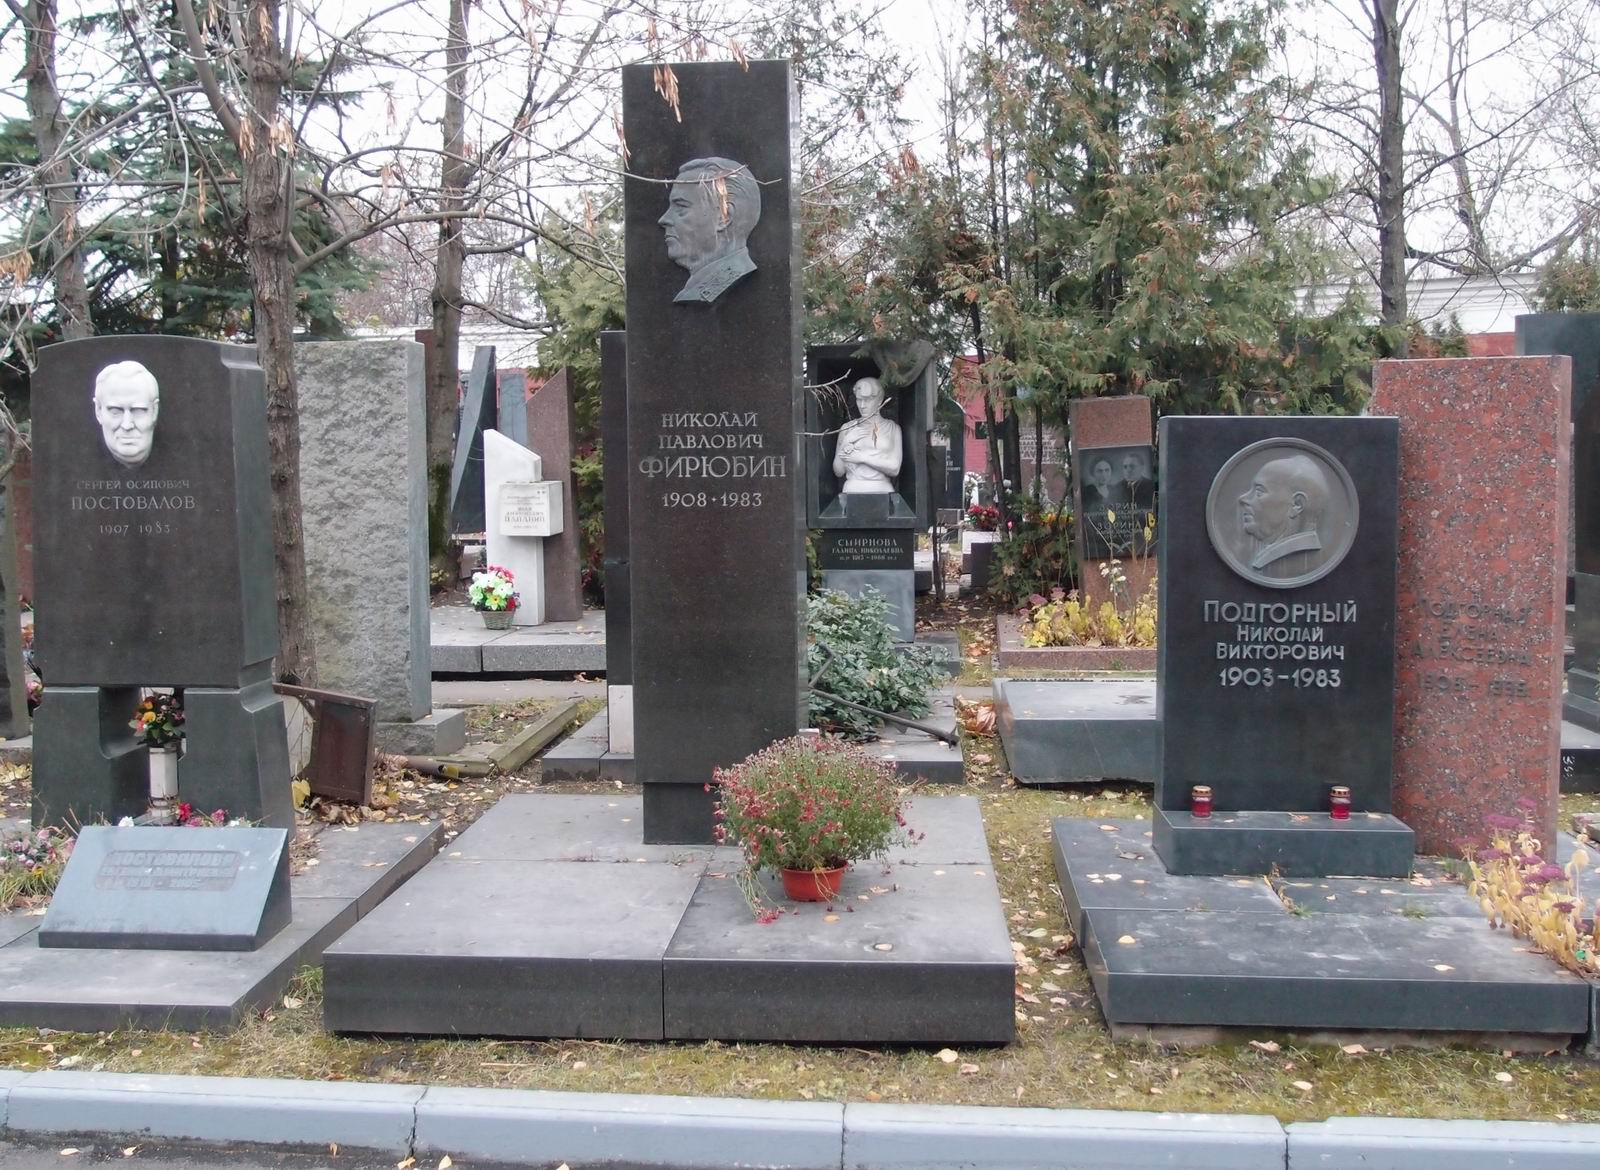 Памятник на могиле Фирюбина Н.П. (1908-1983), ск. З.Церетели, худ. К.Гоголева, на Новодевичьем кладбище (10-1-11).